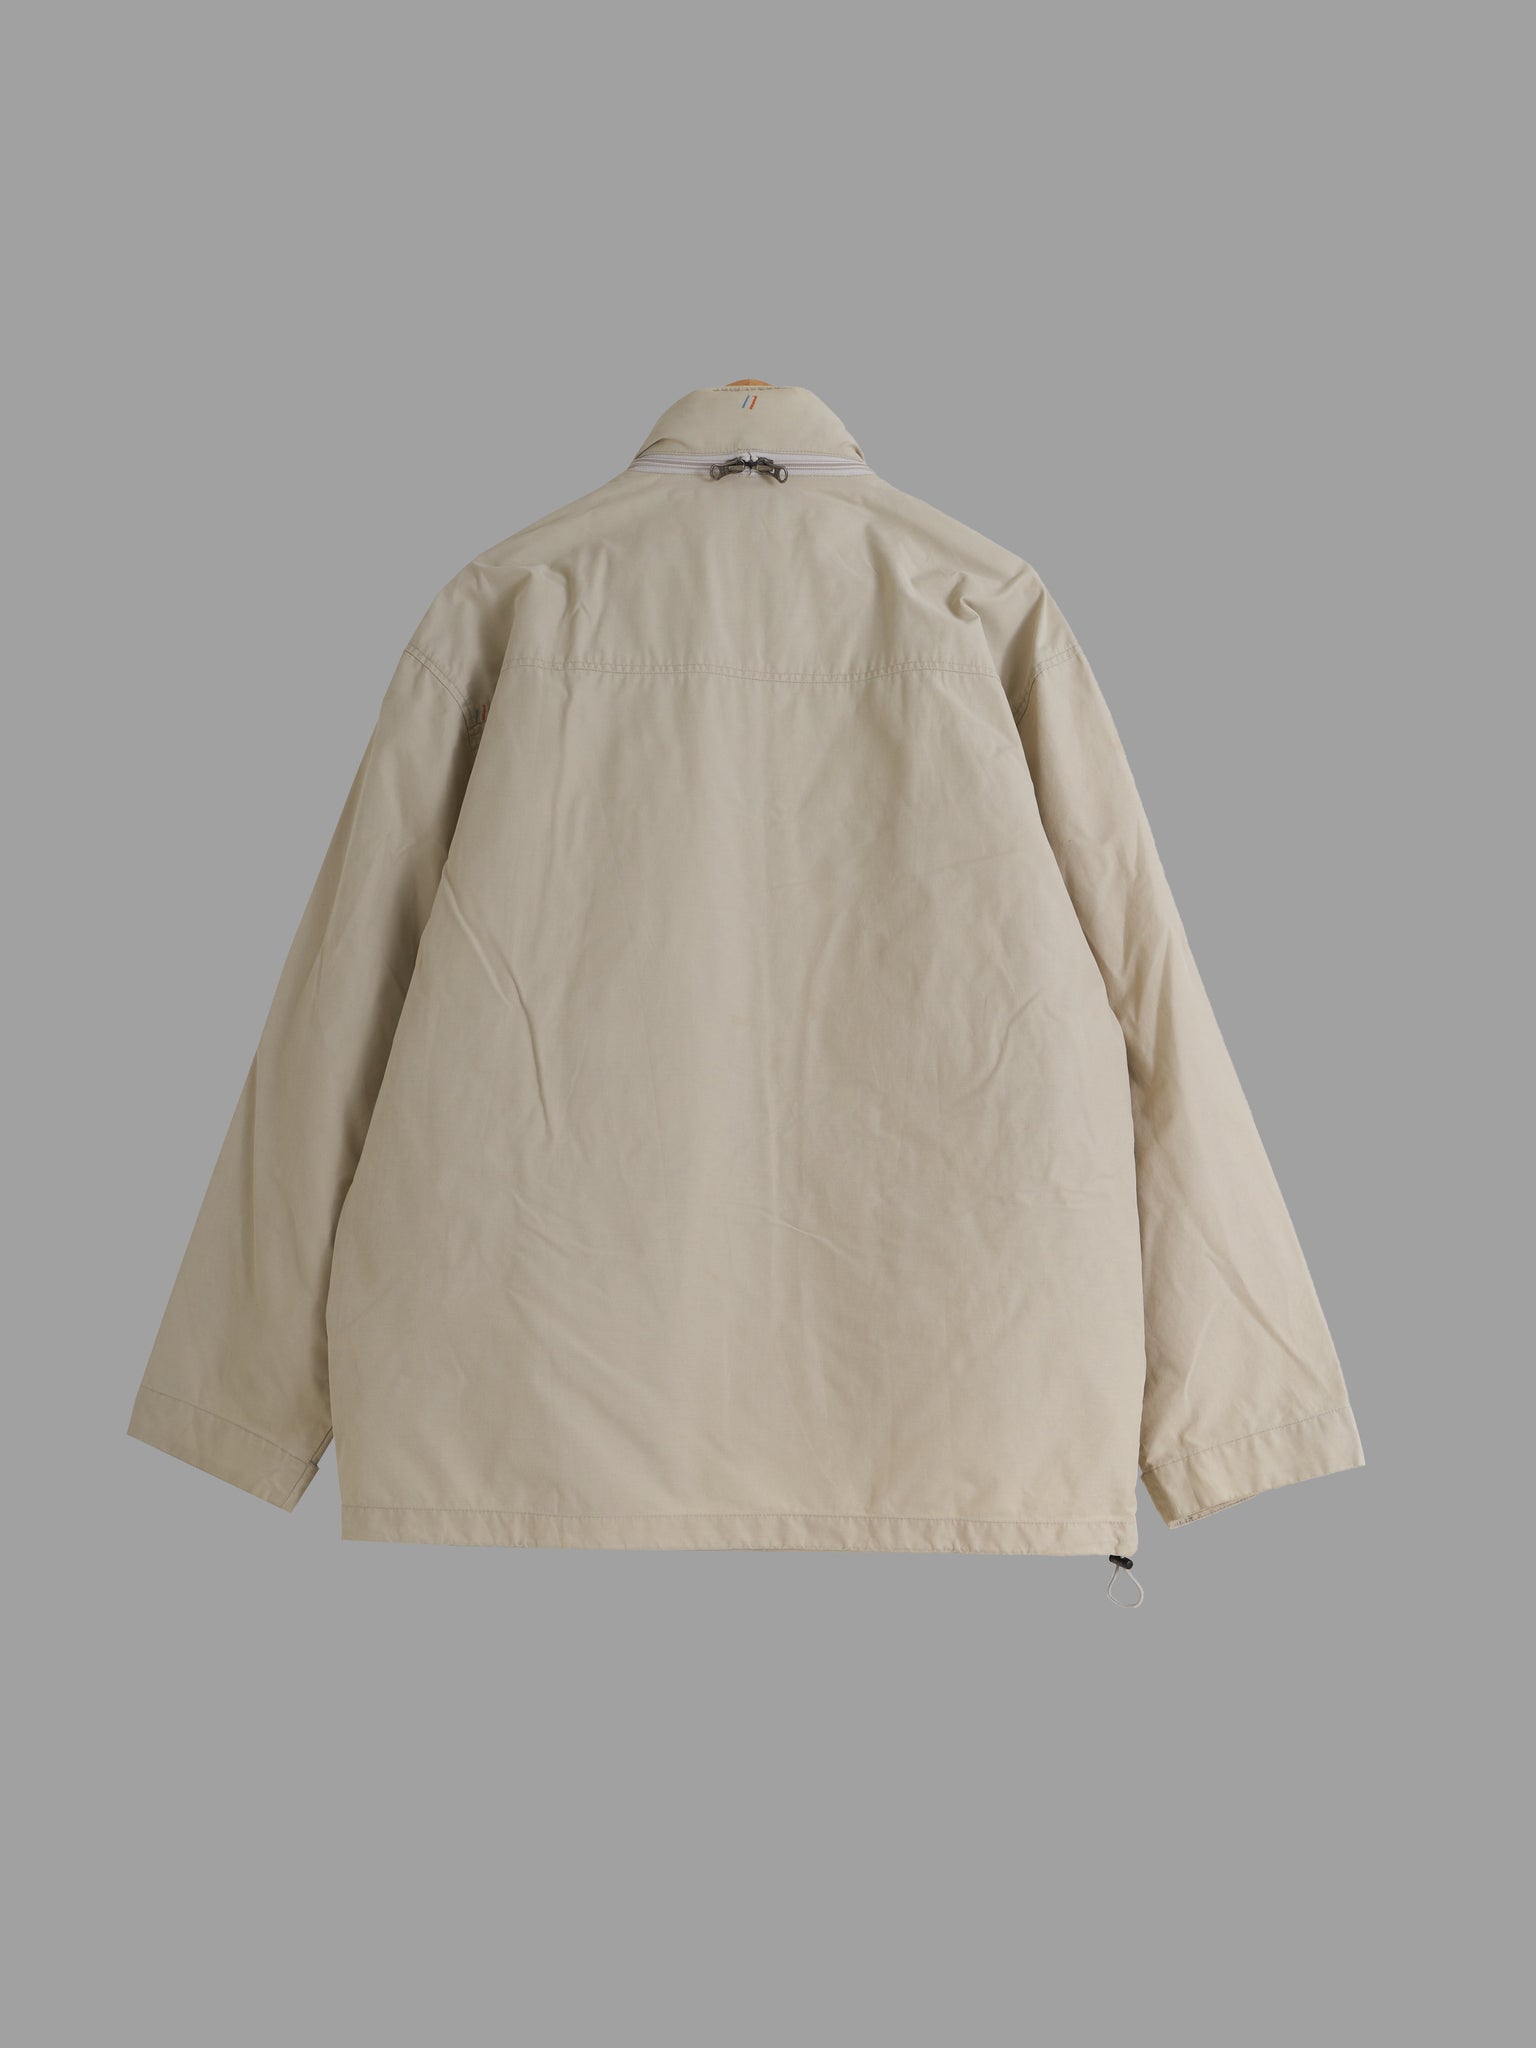 ECKO UNLTD 2000s beige CD pocket jacket with packable hood